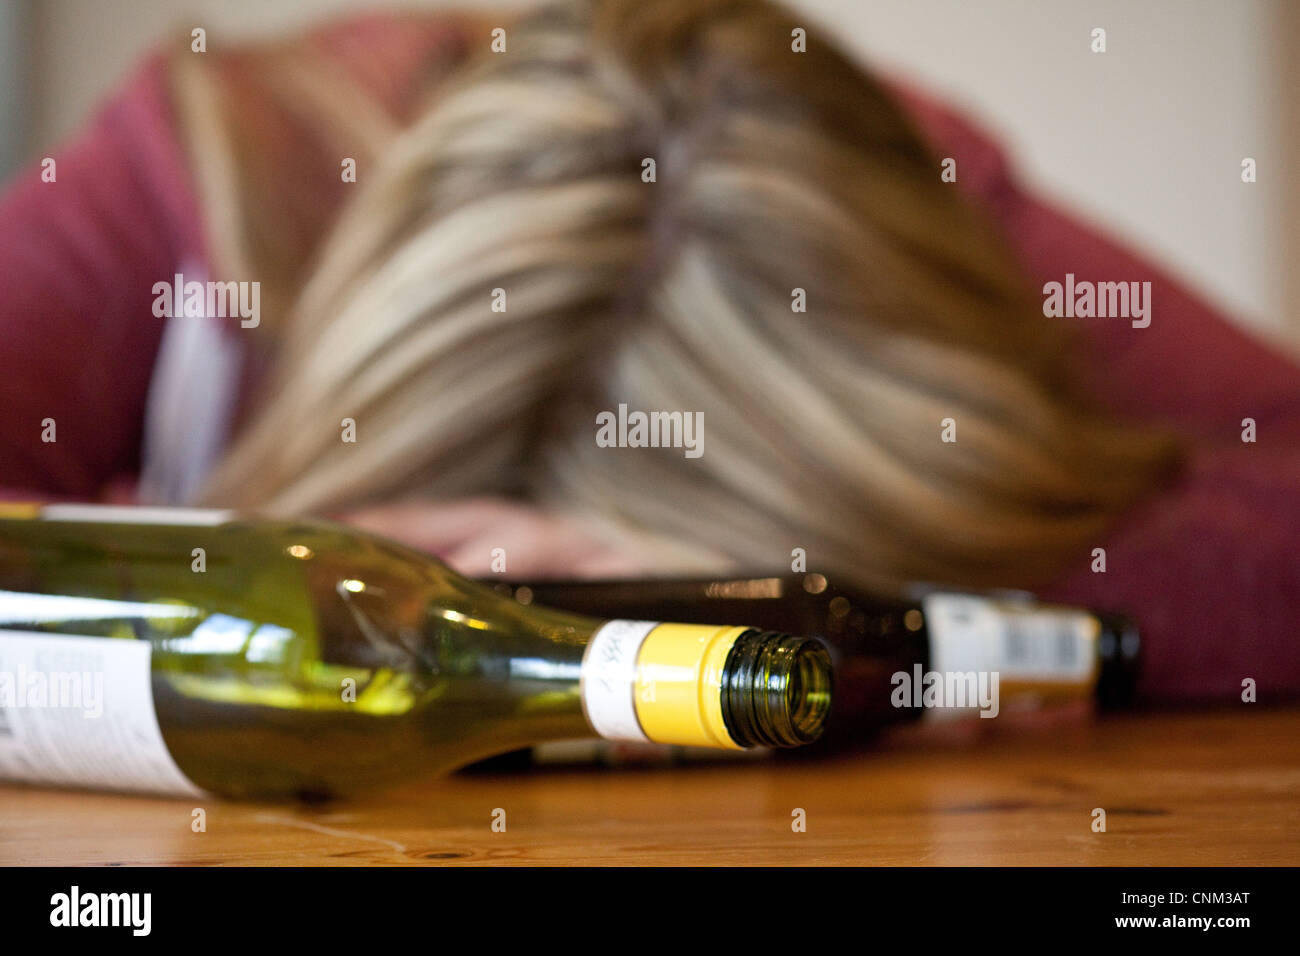 Junge blonde Frau betrunken, mit leeren Flaschen Alkohol, UK - gestellt durch ein Modell Stockfoto